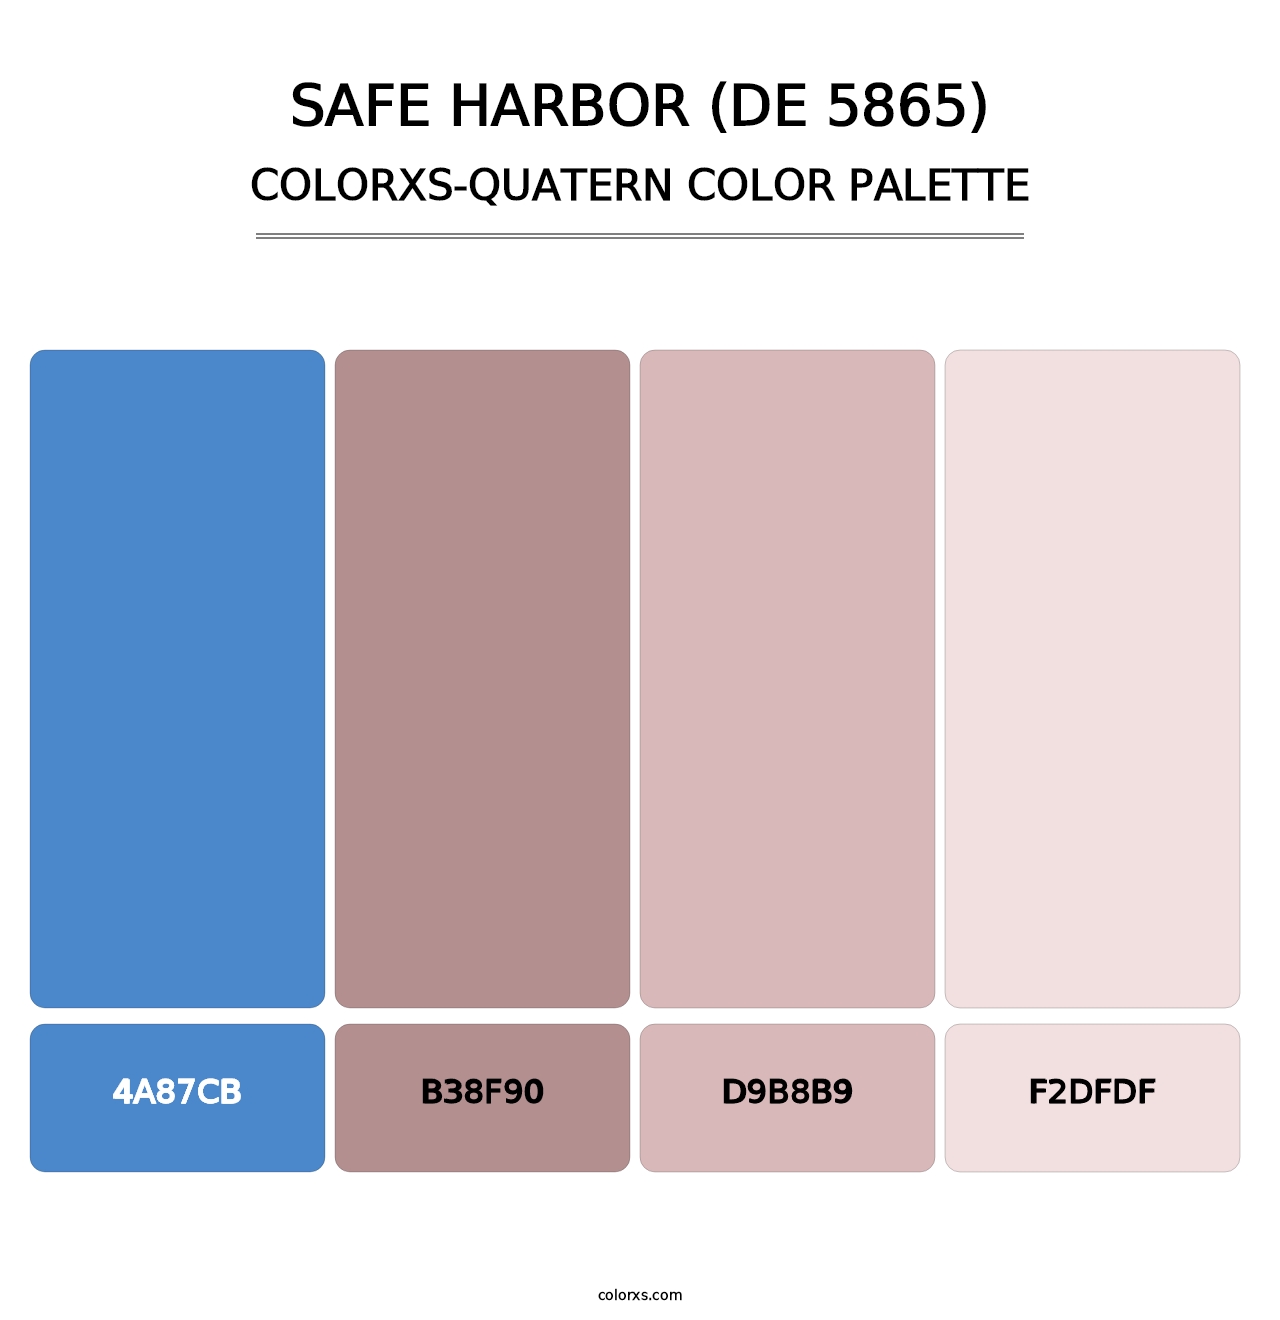 Safe Harbor (DE 5865) - Colorxs Quatern Palette